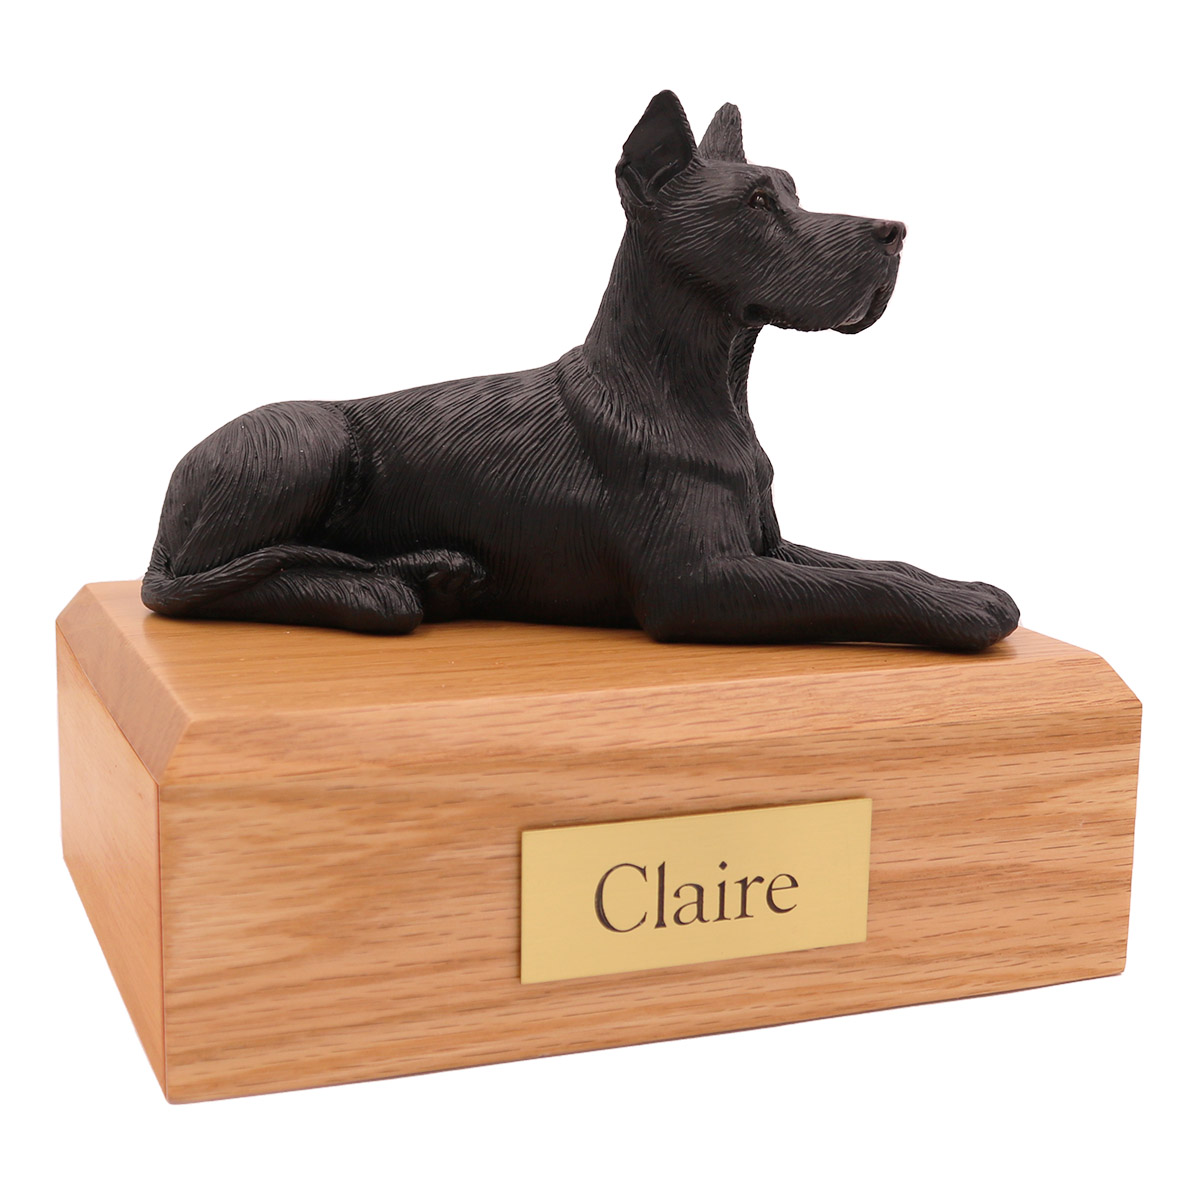 Dog, Great Dane, Black (Ears Up) - Figurine Urn